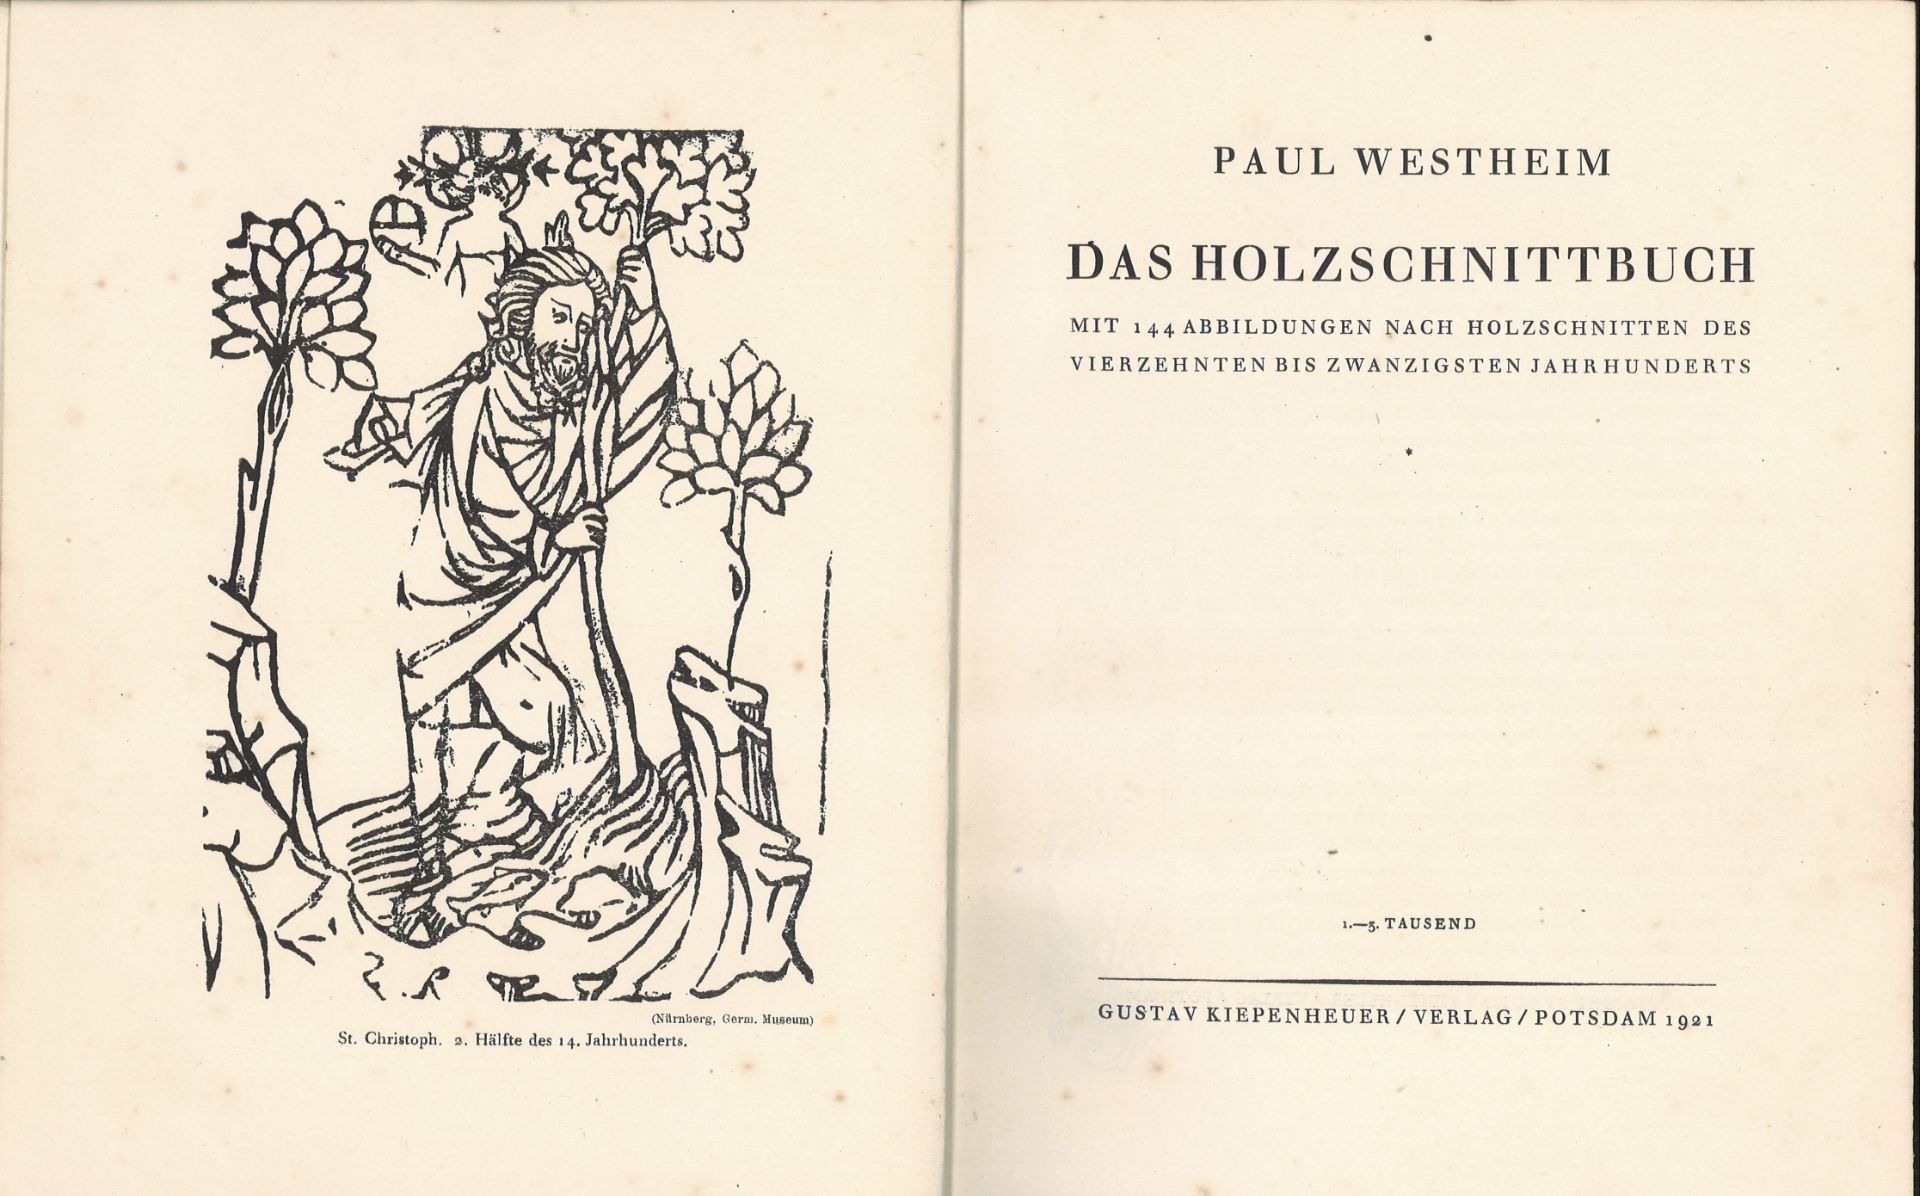 Paul Westheim, Das Holzschnittbuch, Mit 144 Abbildungen nach Holzschnitten des vierzehnten bis